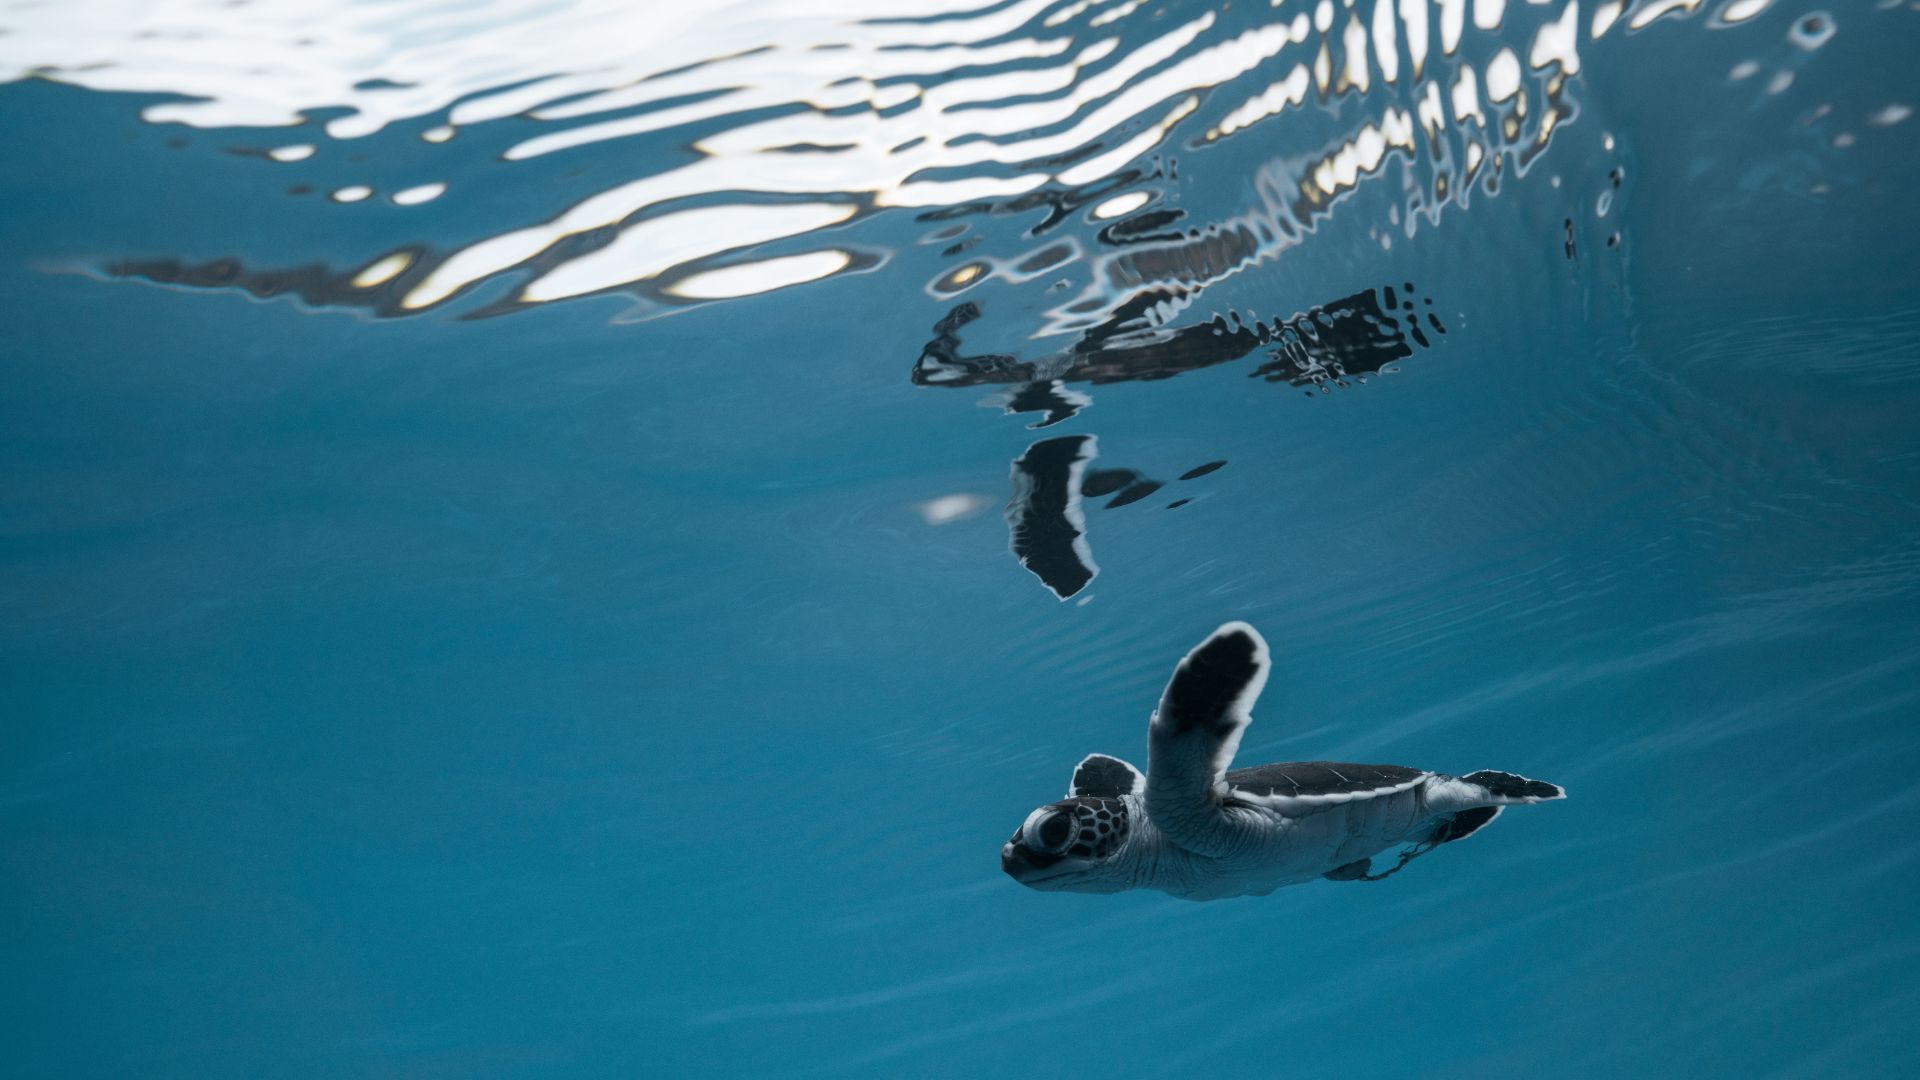 Le réchauffement climatique féminise dangereusement les tortues marines